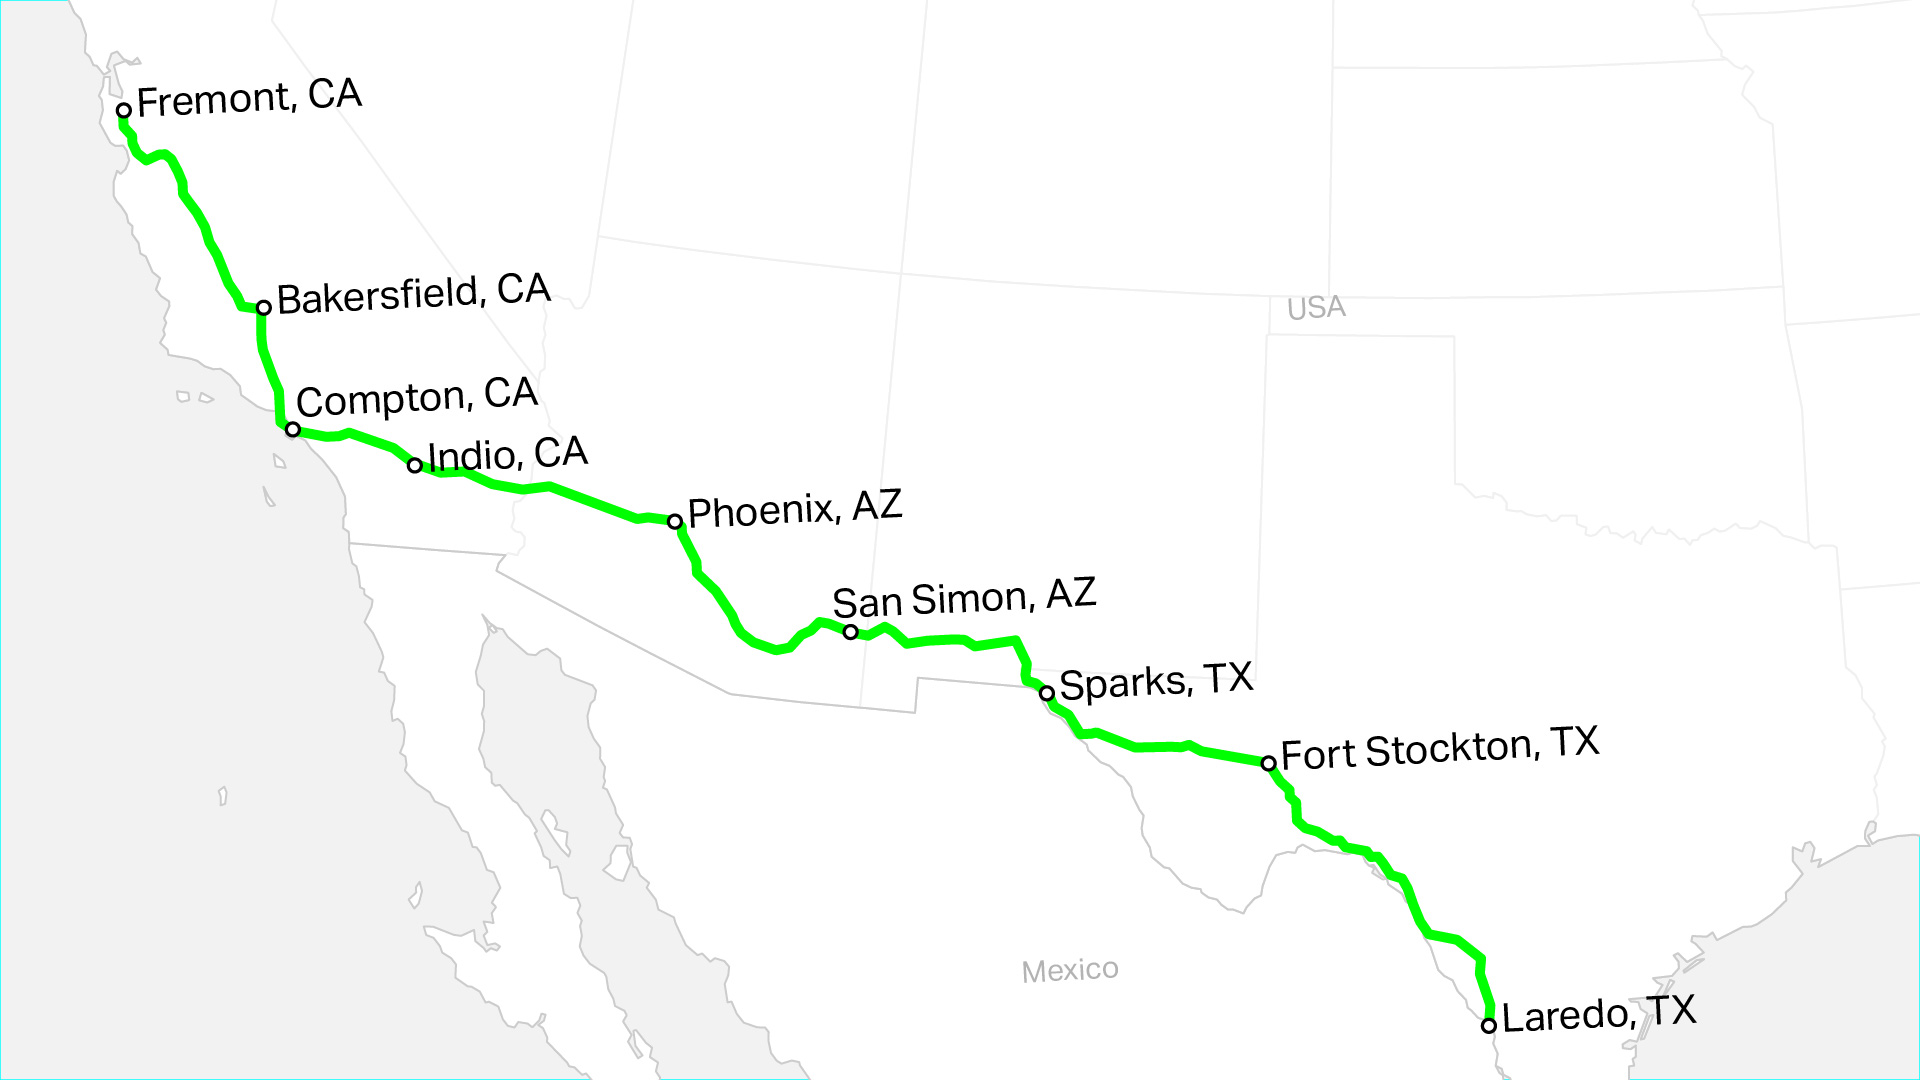 Mapa del corredor de carga propuesto desde Fremont CA hasta Laredo TX